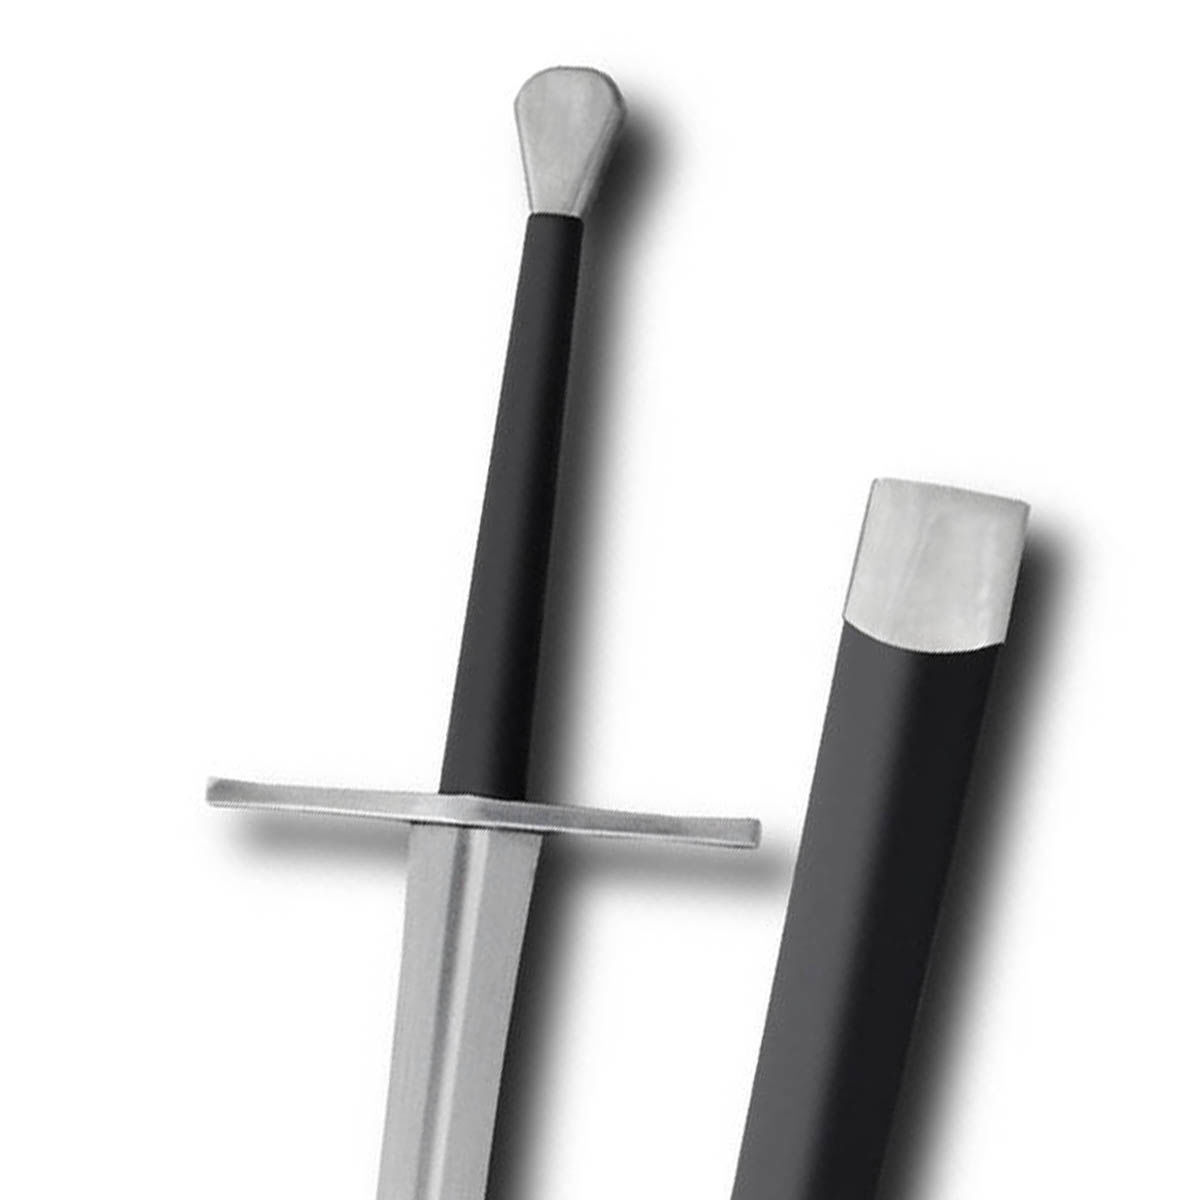 Hanwei/ Tinker Sharp Longsword has semi-fullered sharp blade Based on the Oakeshott Type XVIIIa with a scent stopper pommel.